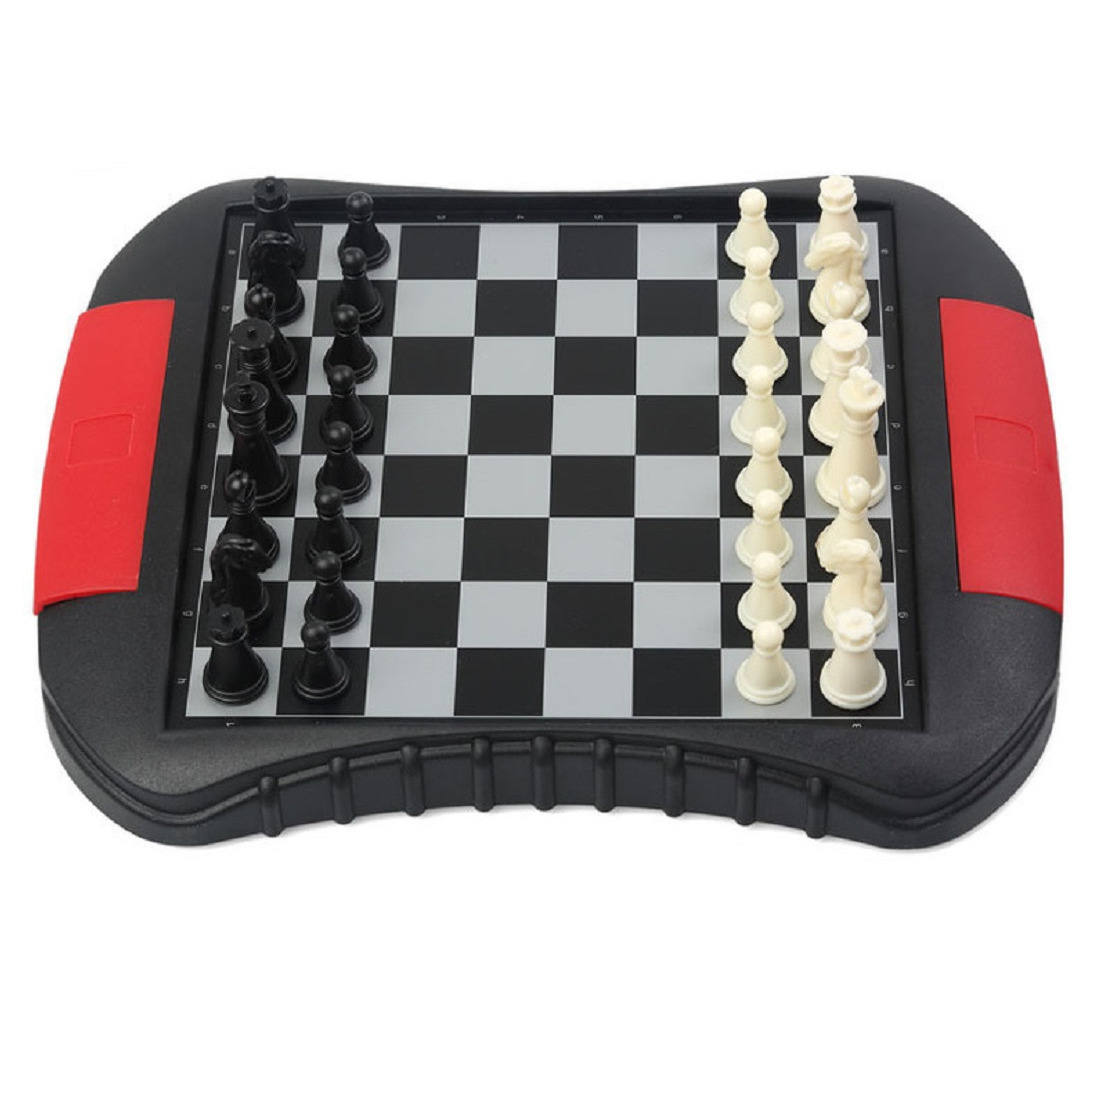 Reisspellen/bordspellen magnetisch schaakspel/schaken set